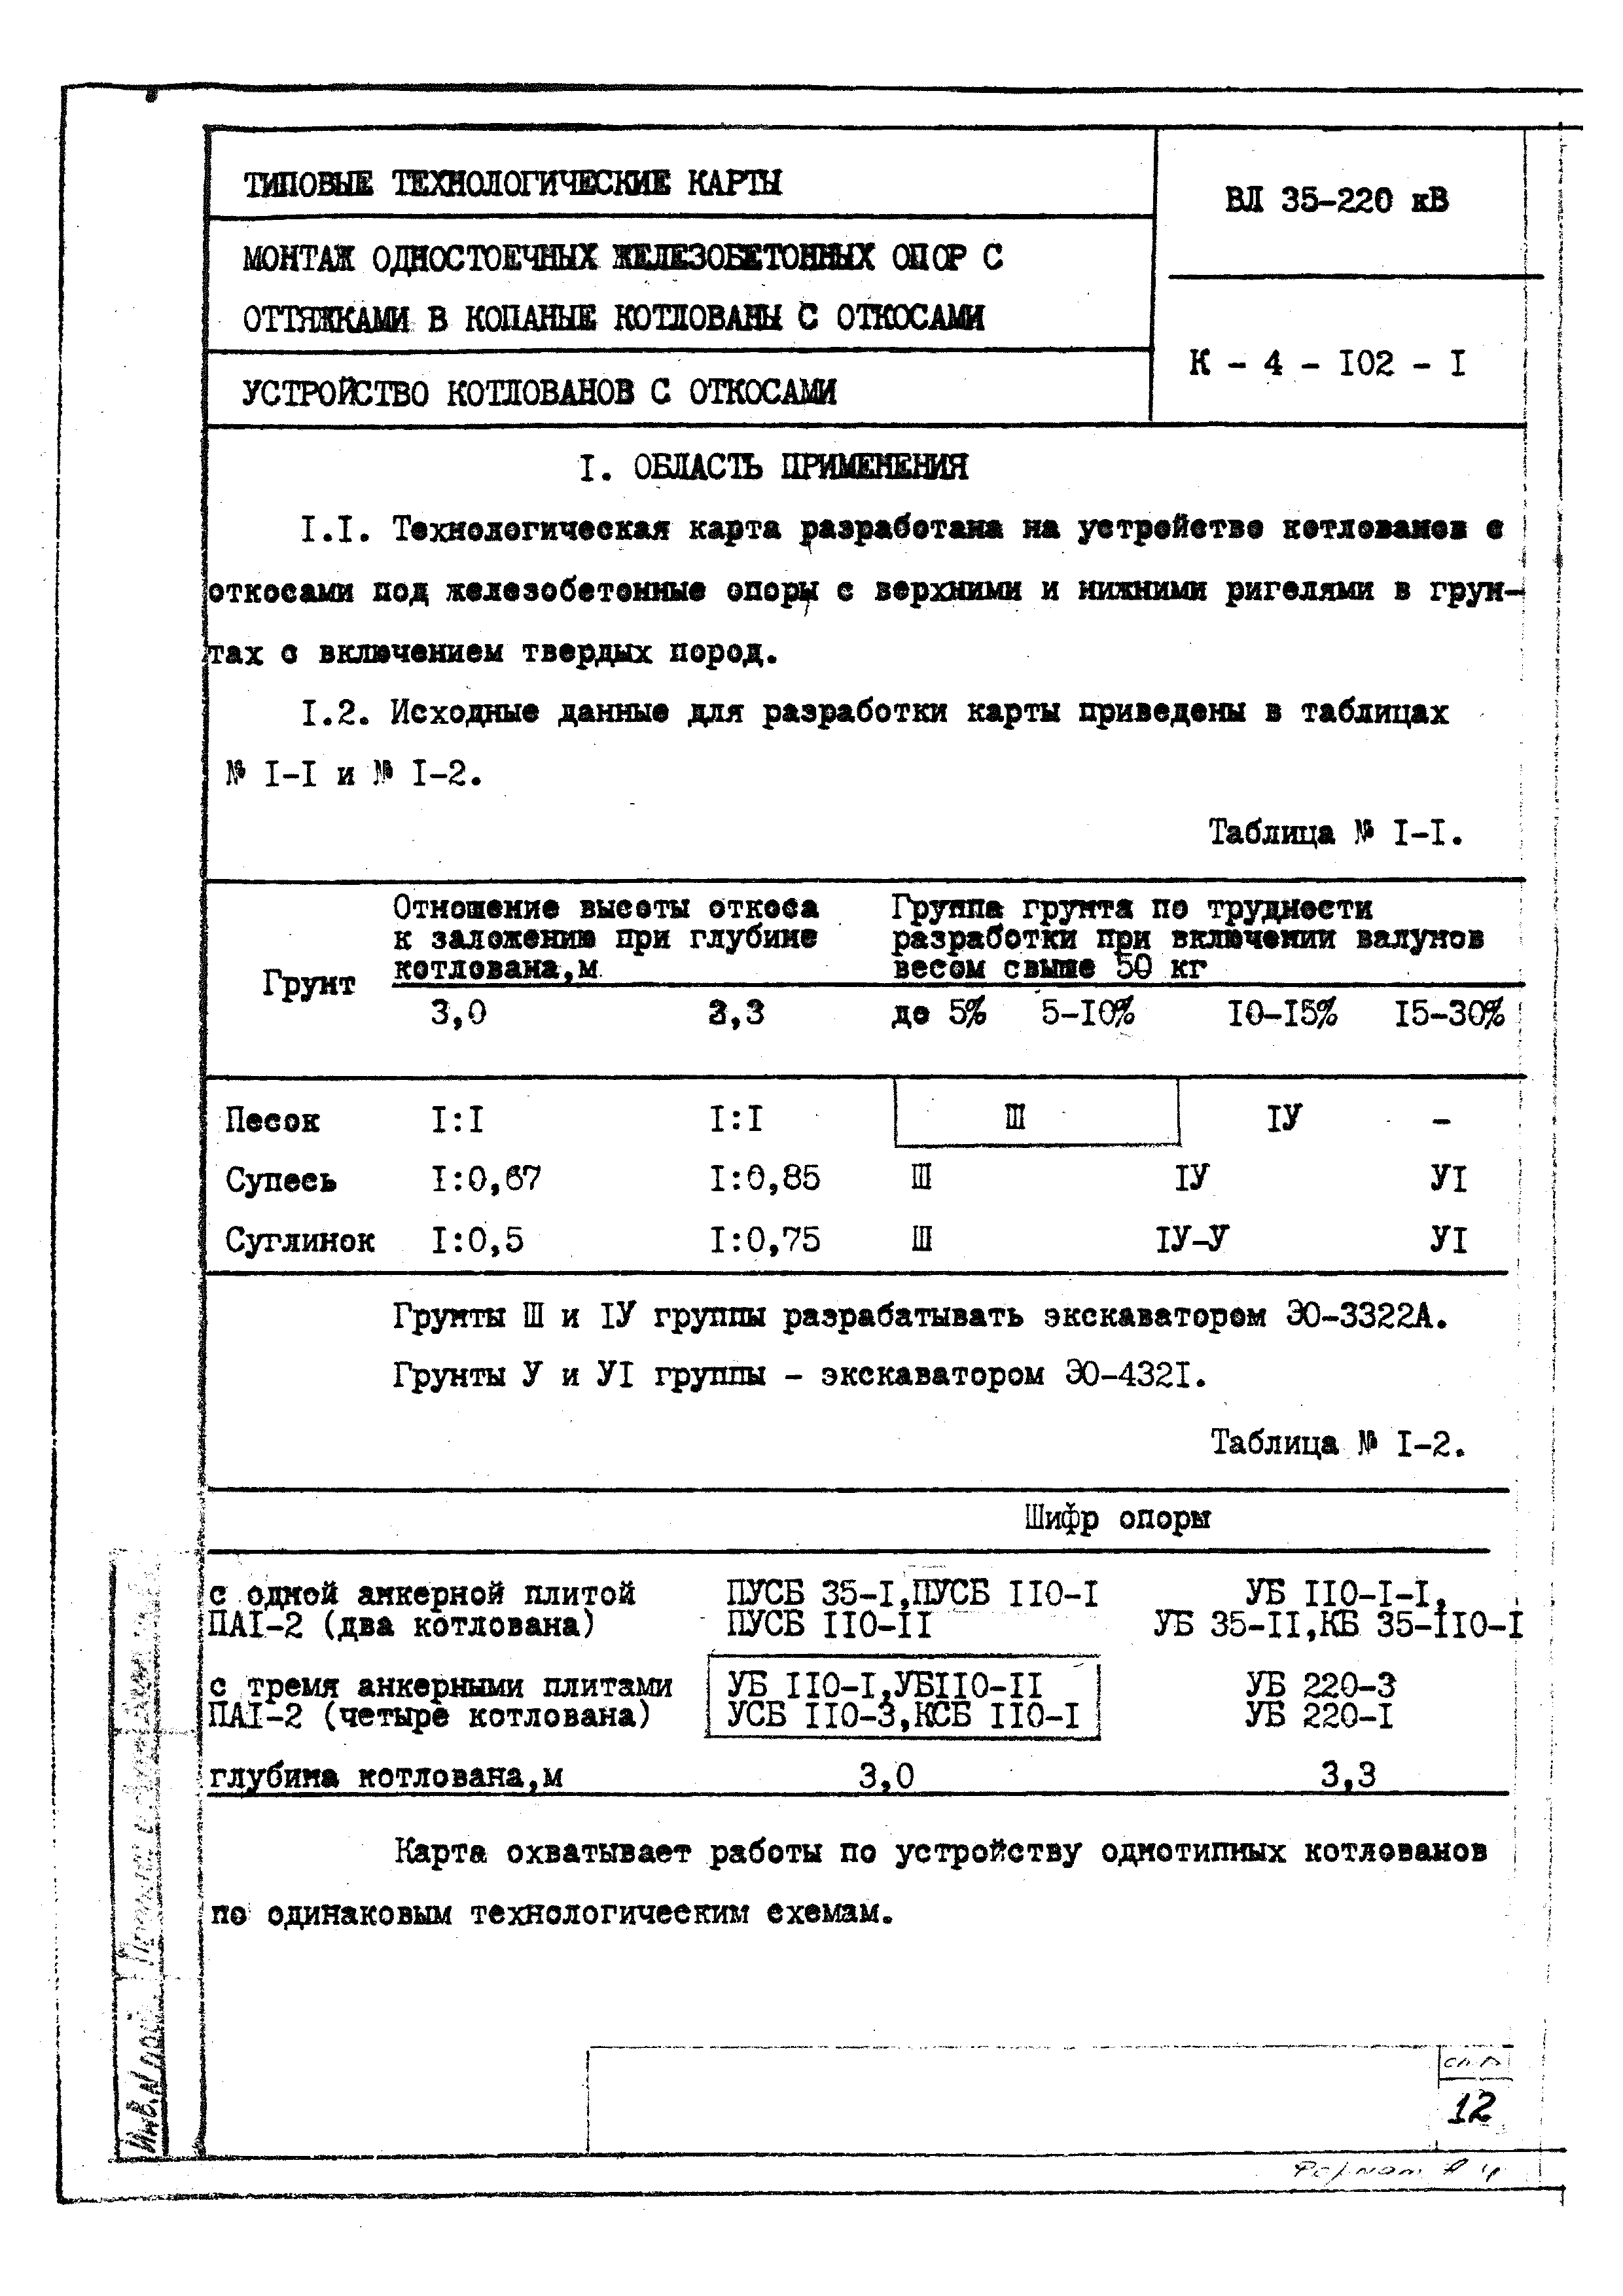 ТТК К-4-102-1